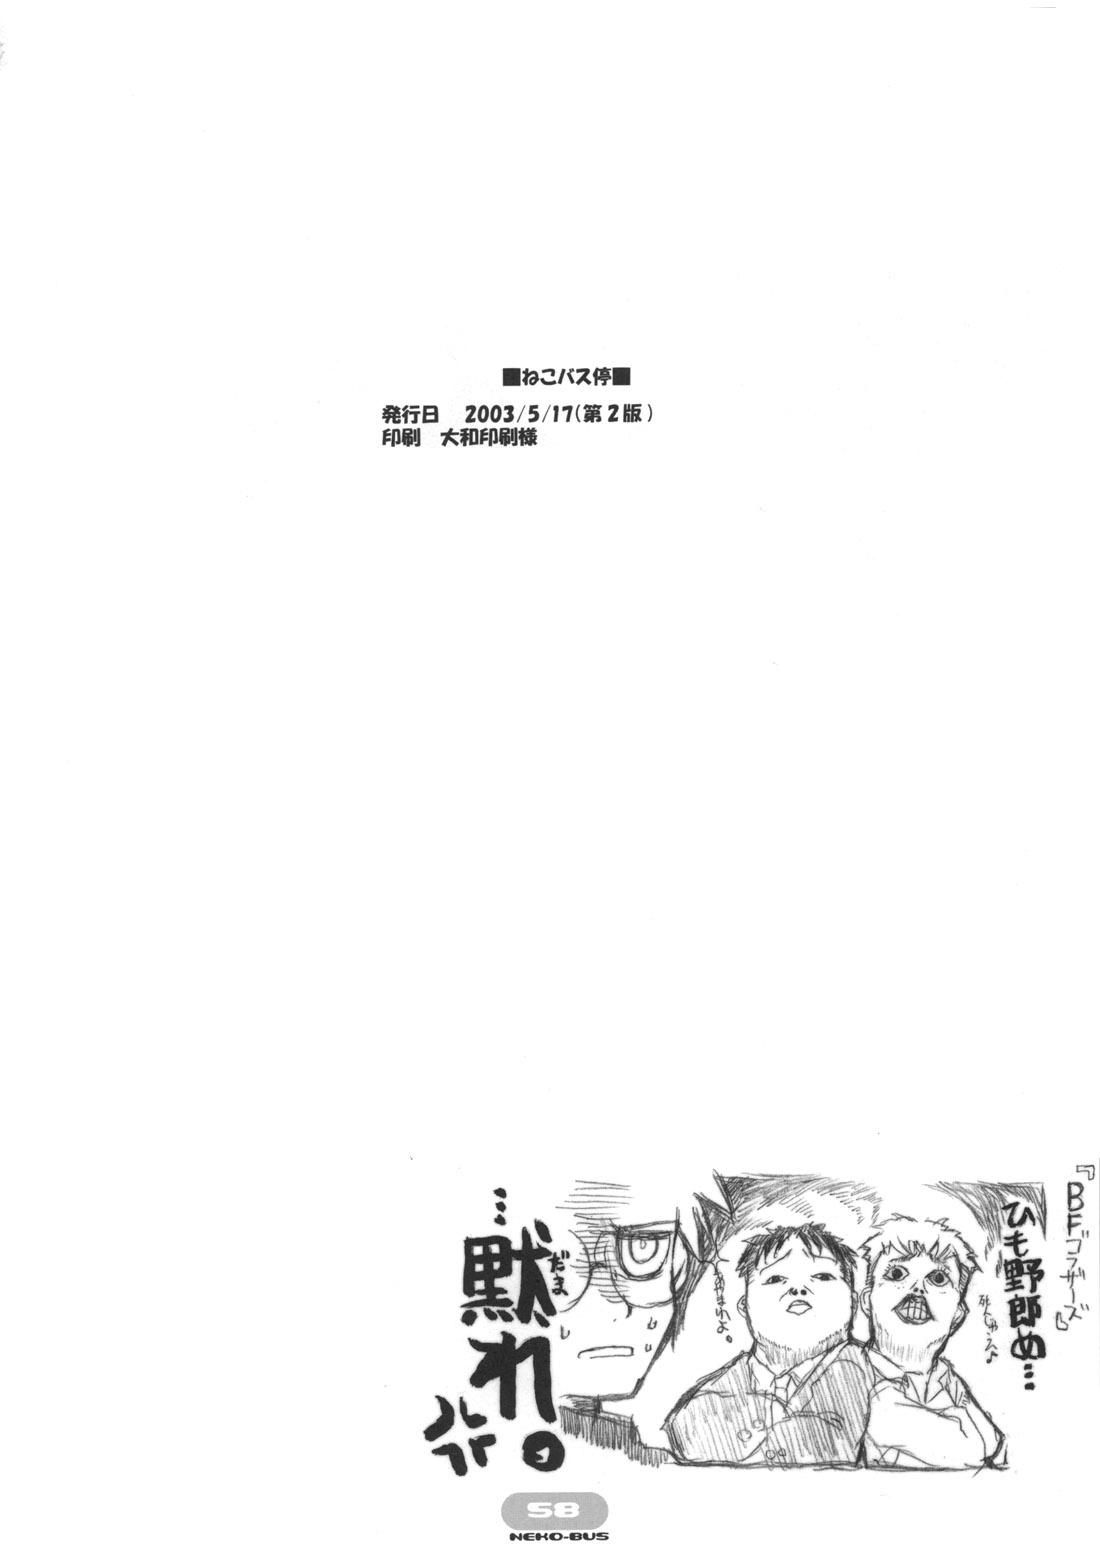 Milfsex Neko-bus Tei no Hon vol.5 - Tsukihime Shemale - Page 58